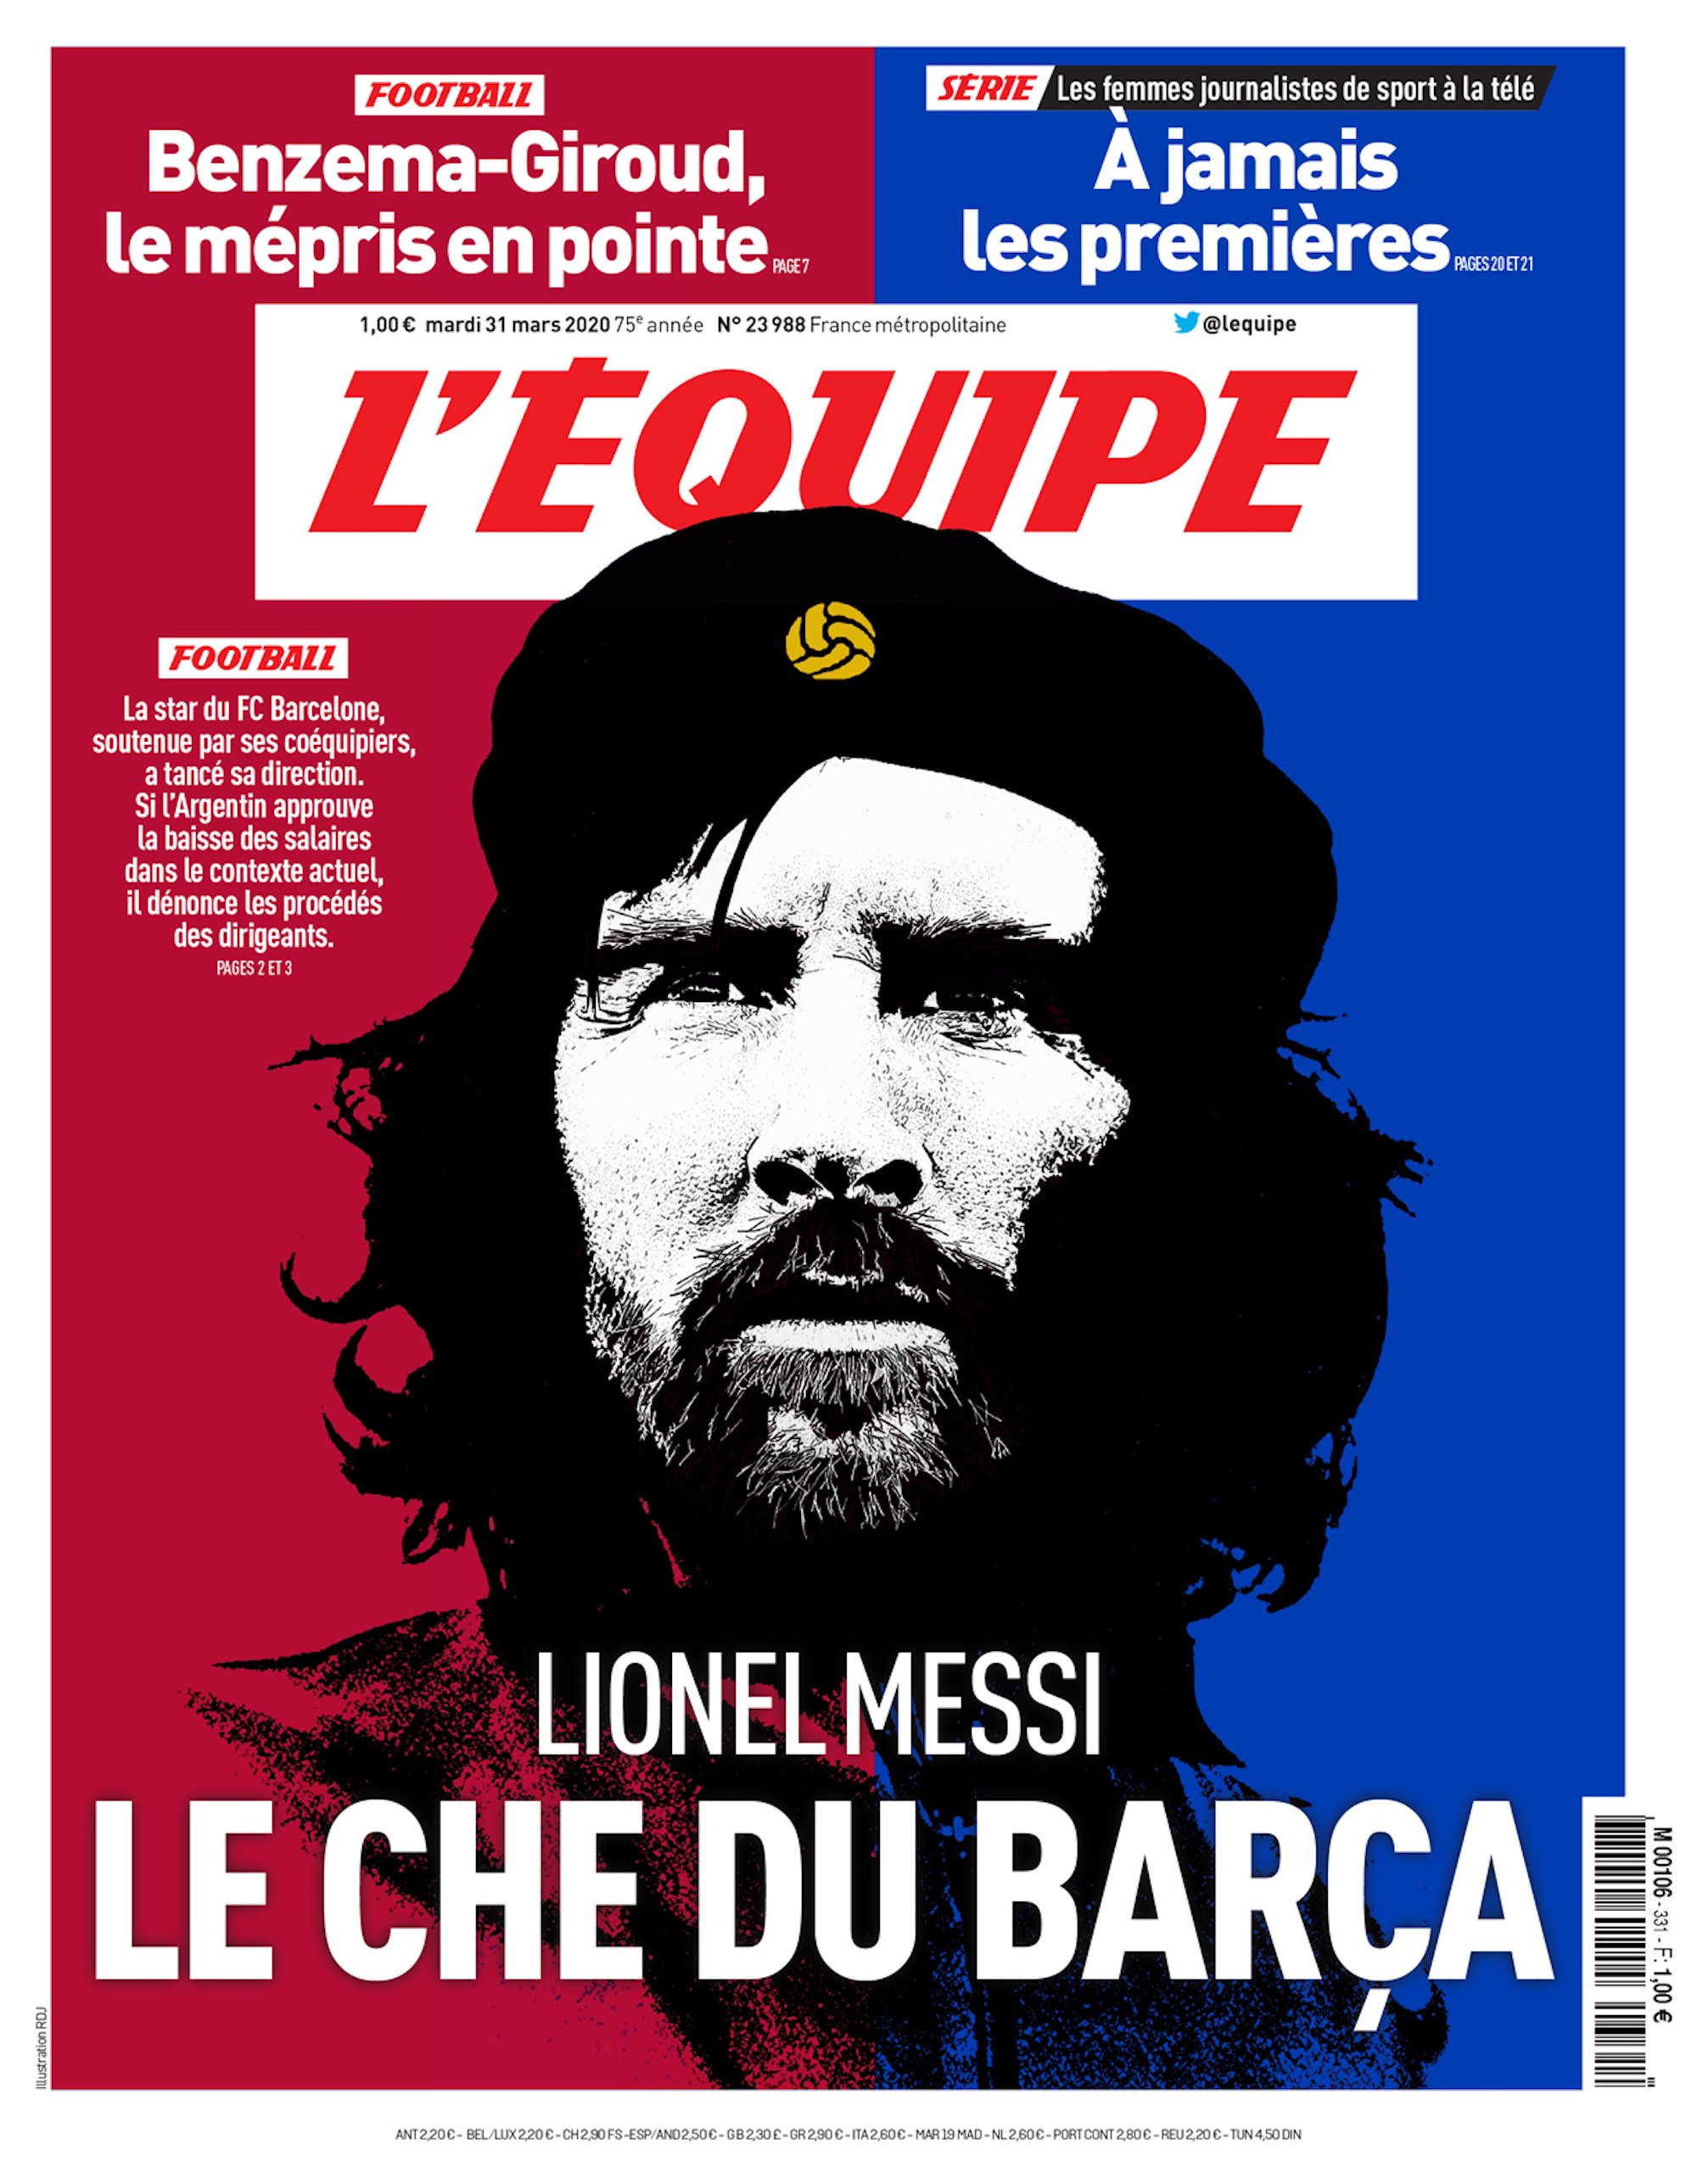 Messi es el Che Guevara del Barça, según 'L'Équipe'